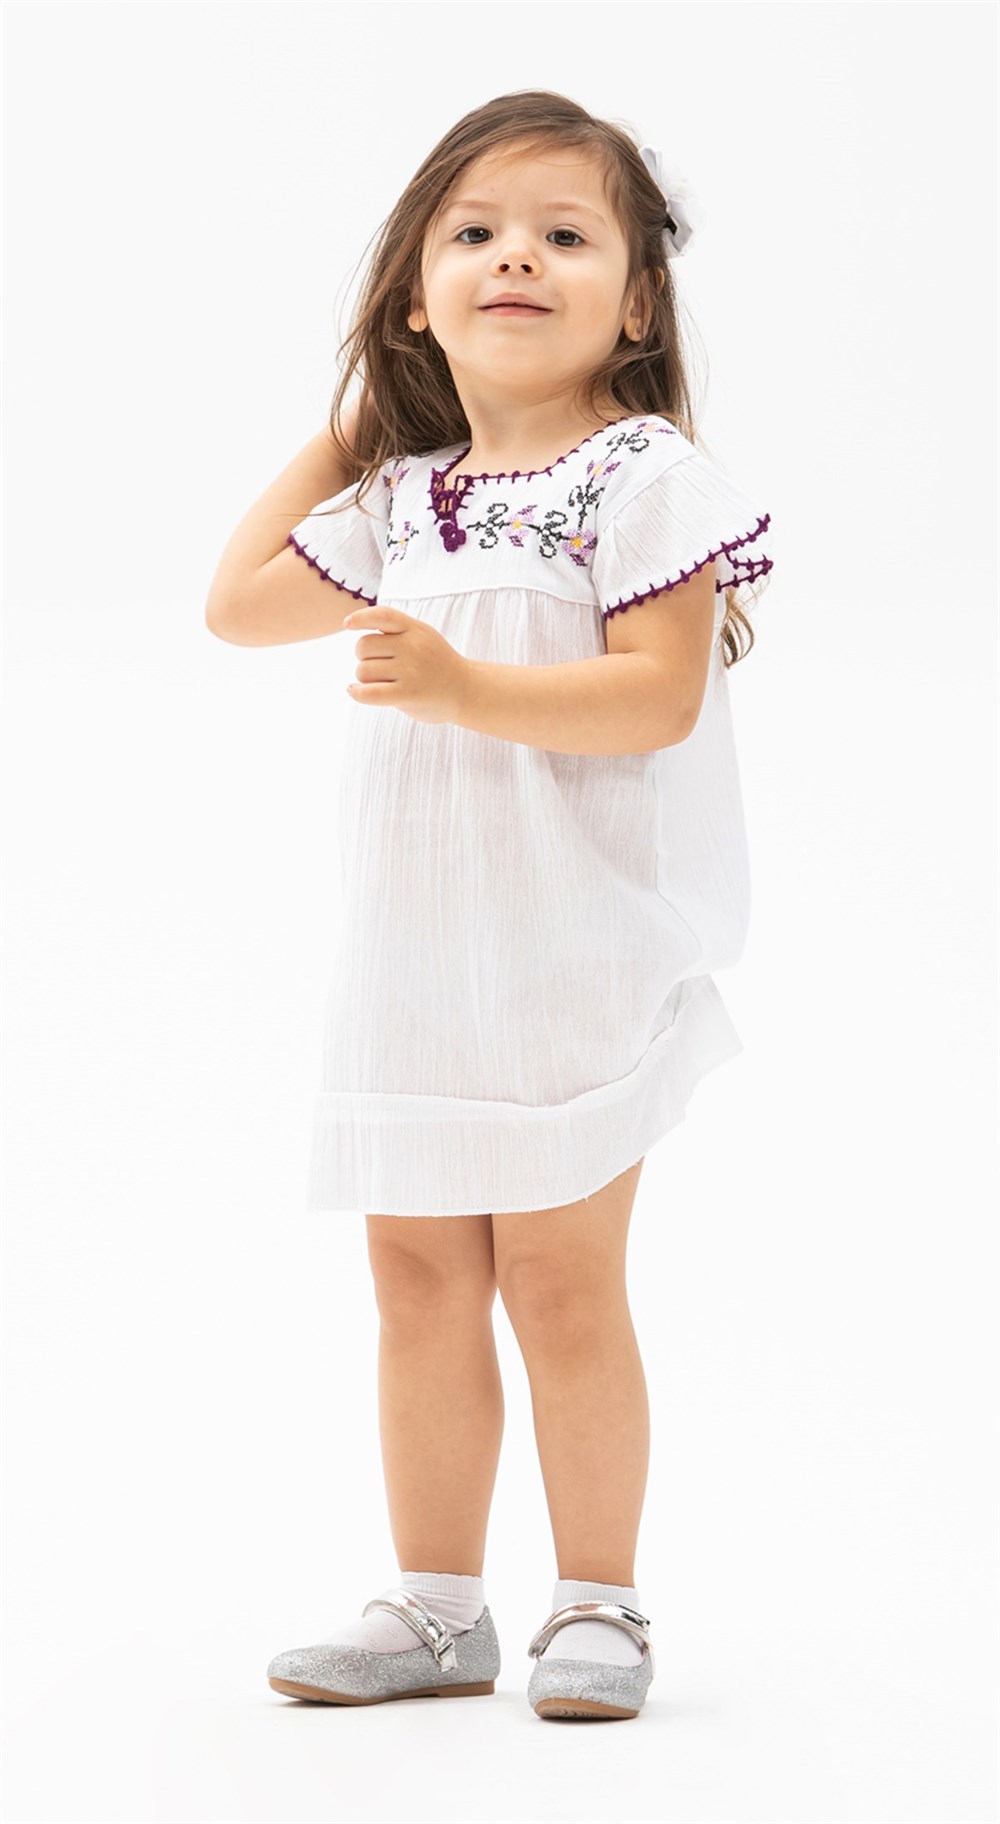 Toptan Şile Bezi Klasik Çocuk Elbise Beyaz | silebezi.com.tr